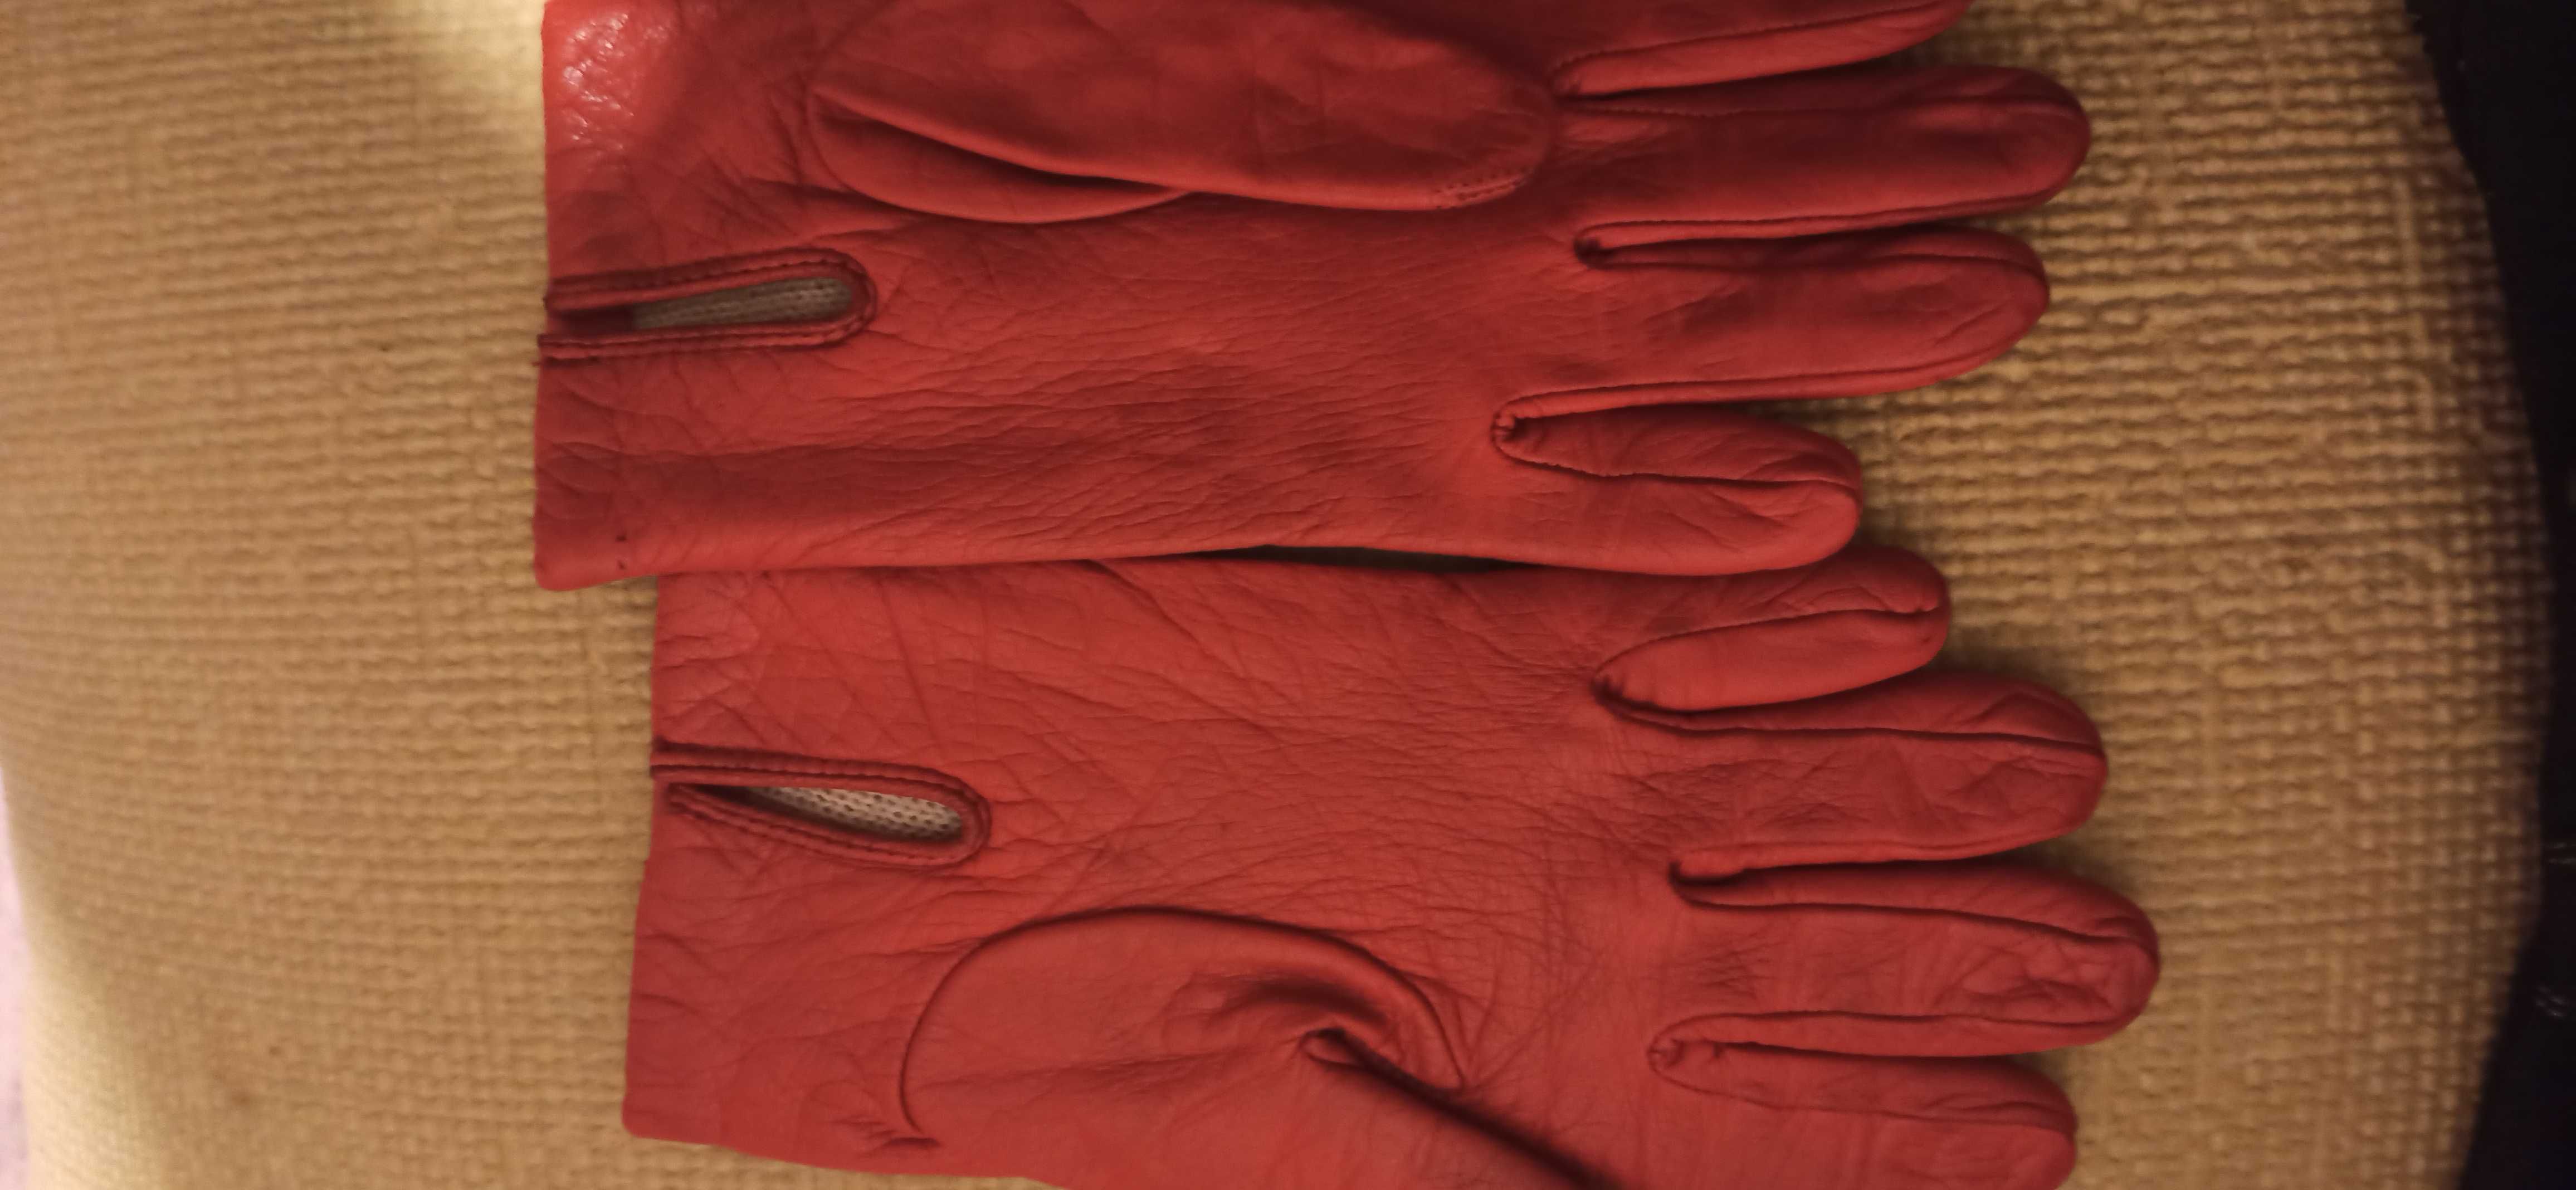 Женские кожаные перчатки и другие